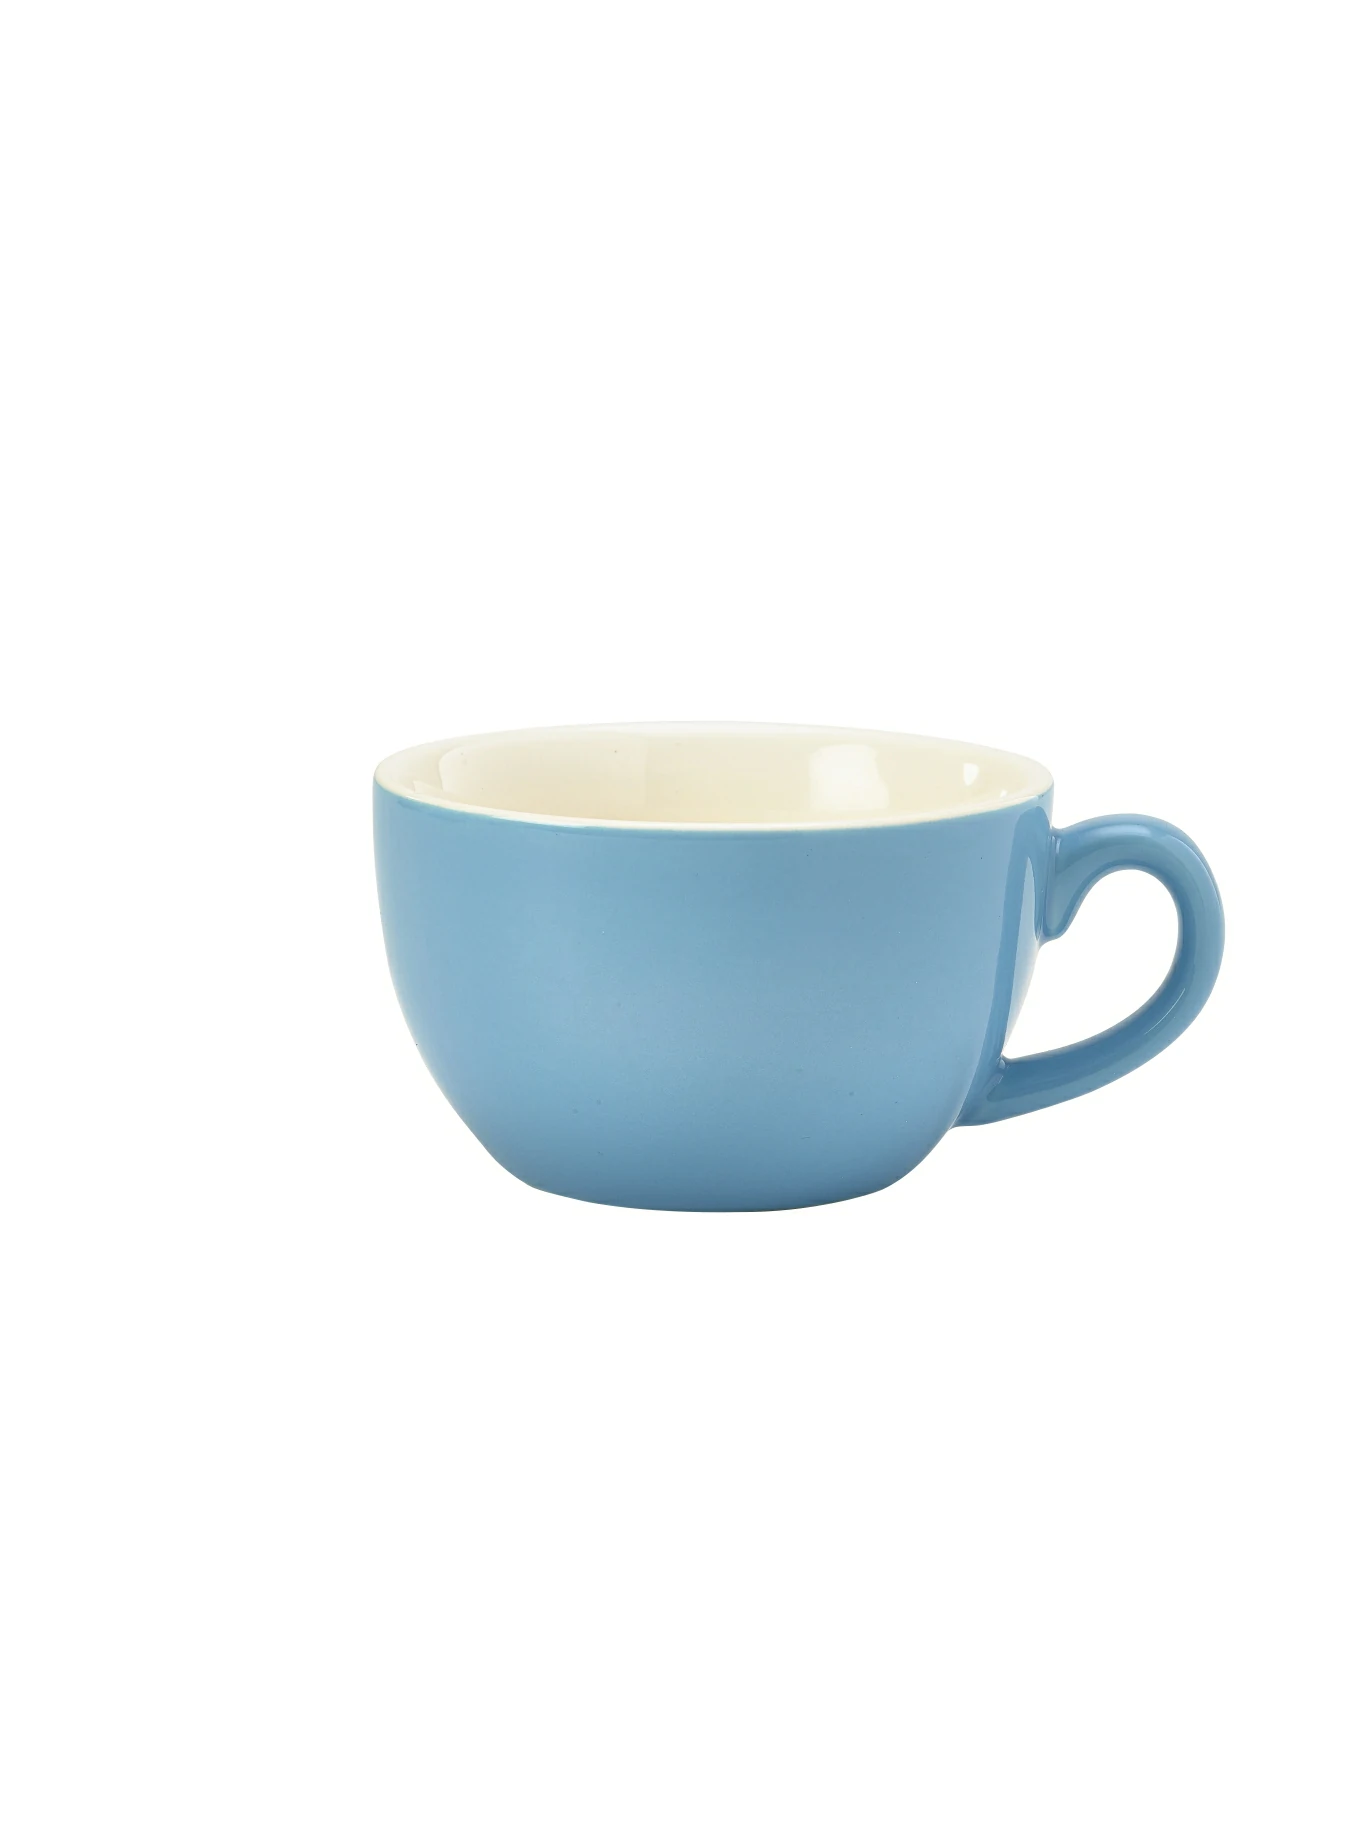 Genware Porcelain Blue Bowl Shaped Cup 25cl/8.75oz